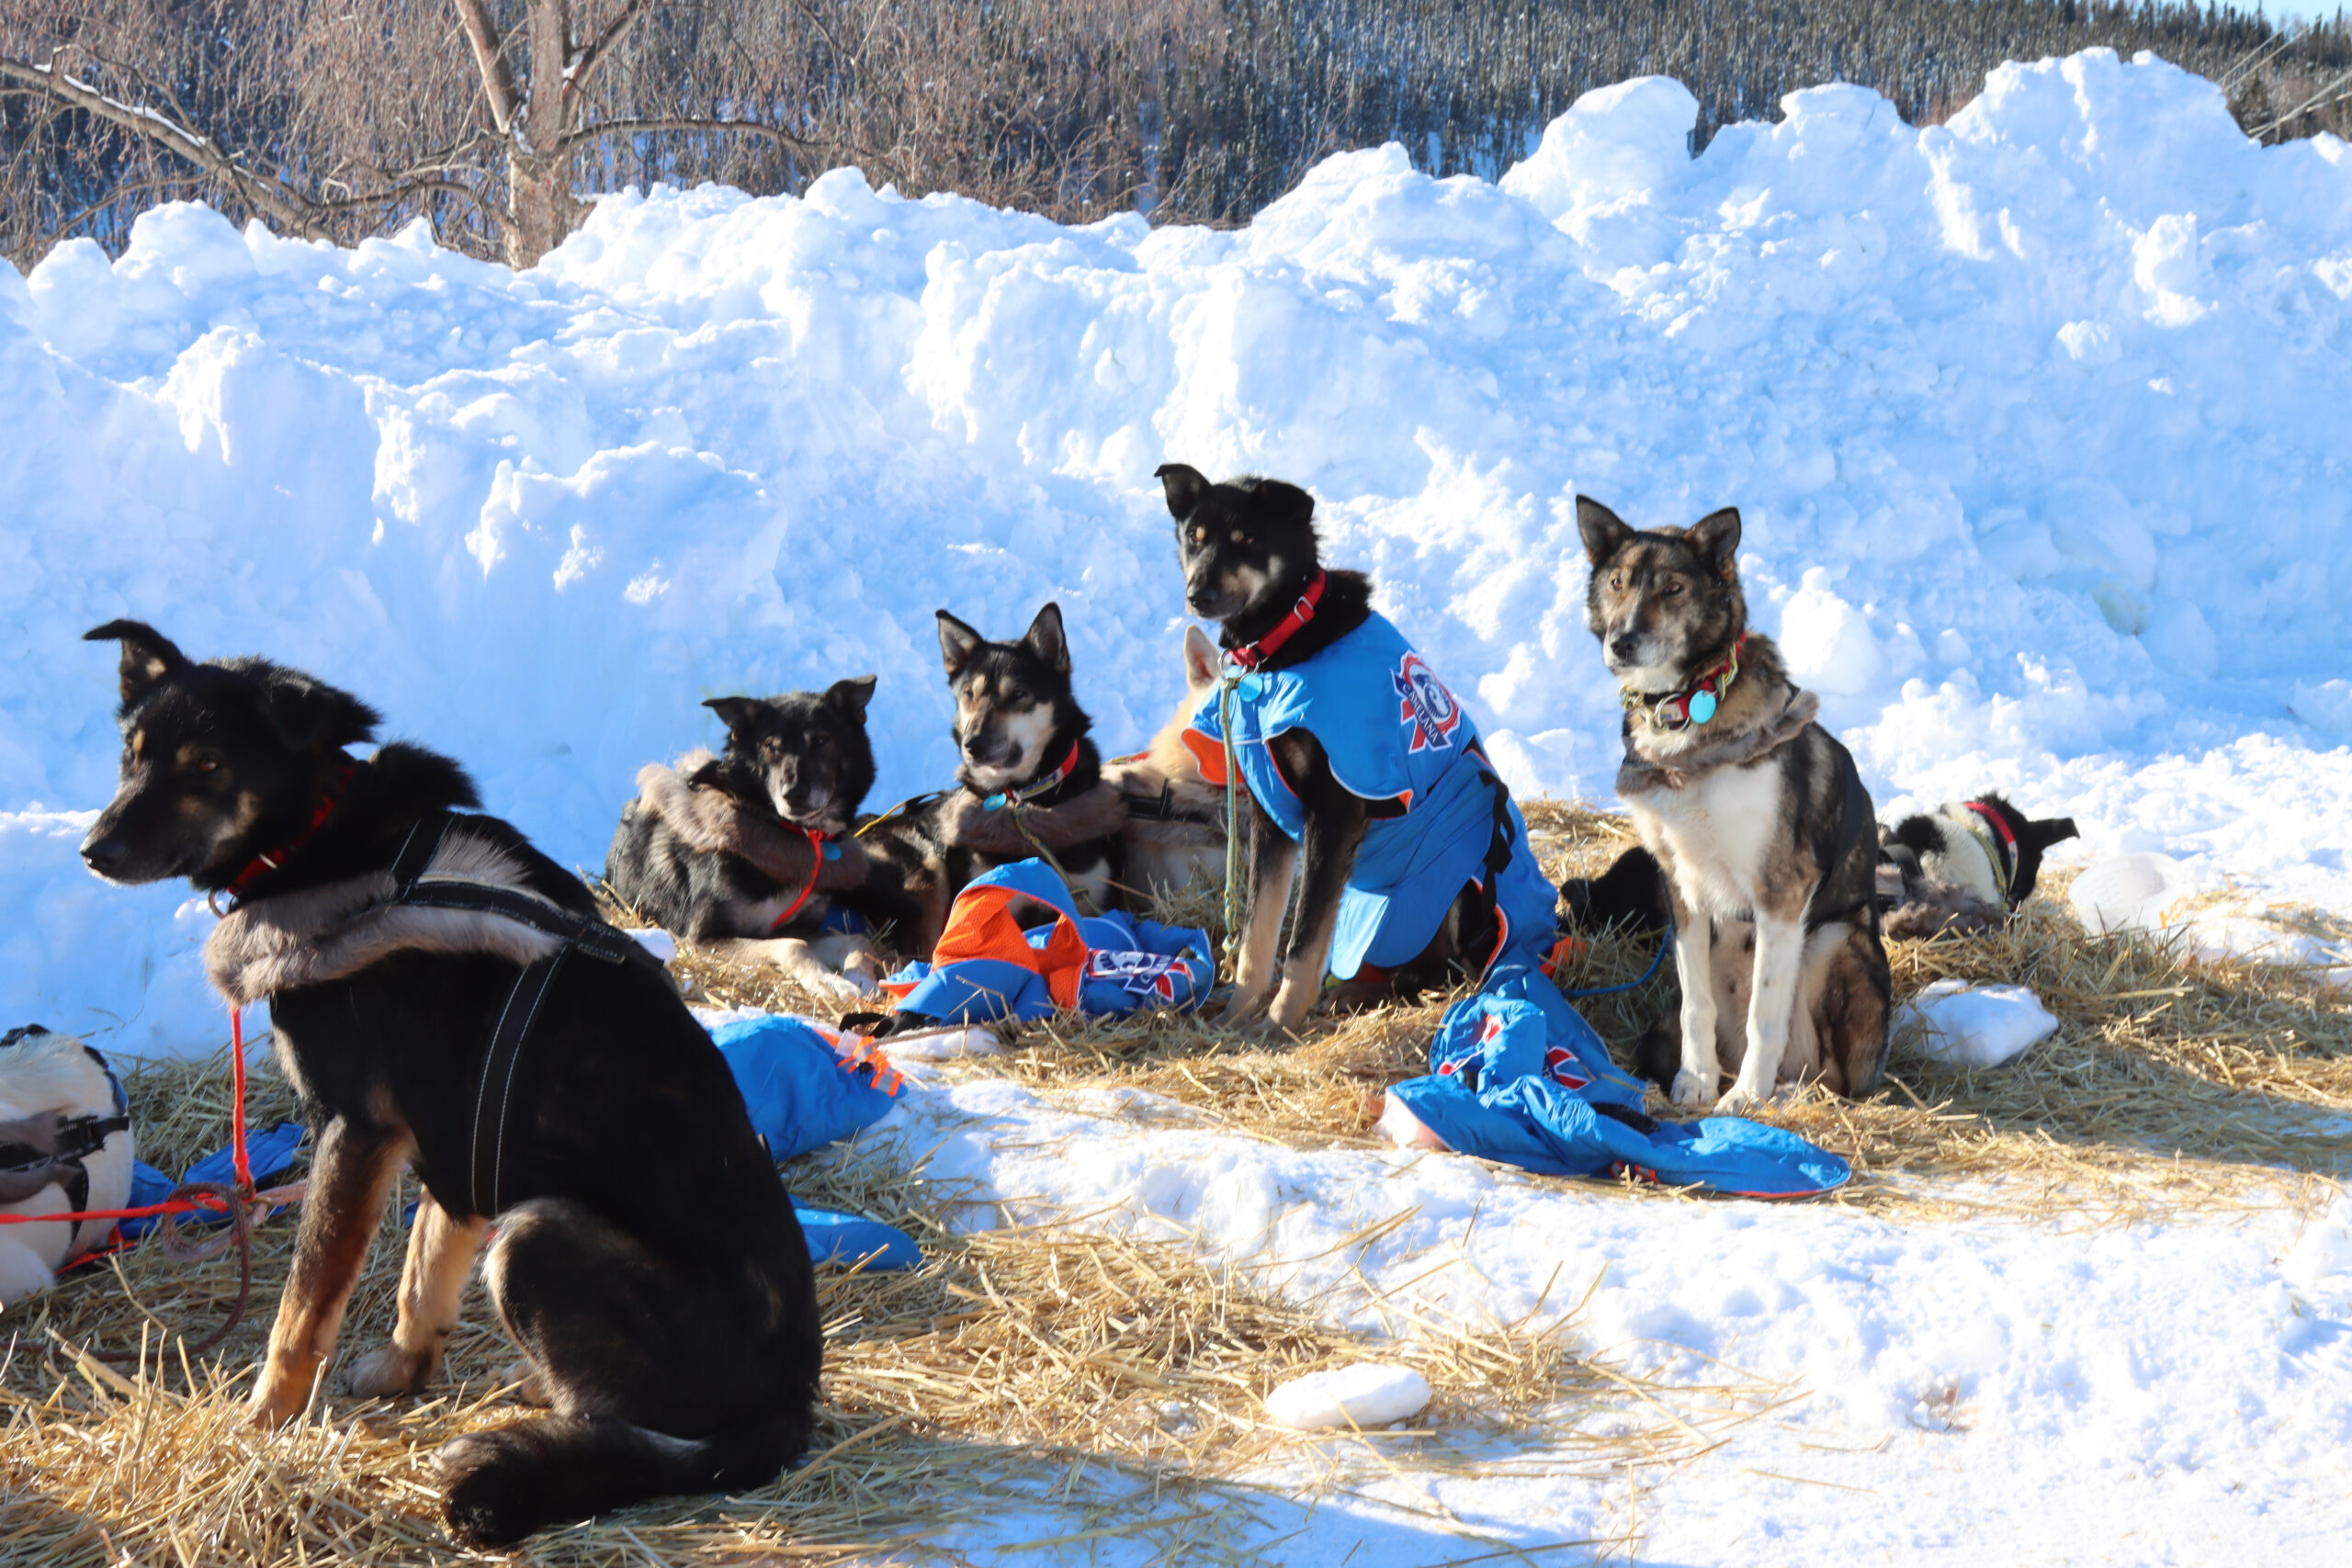 a dog team on the snow